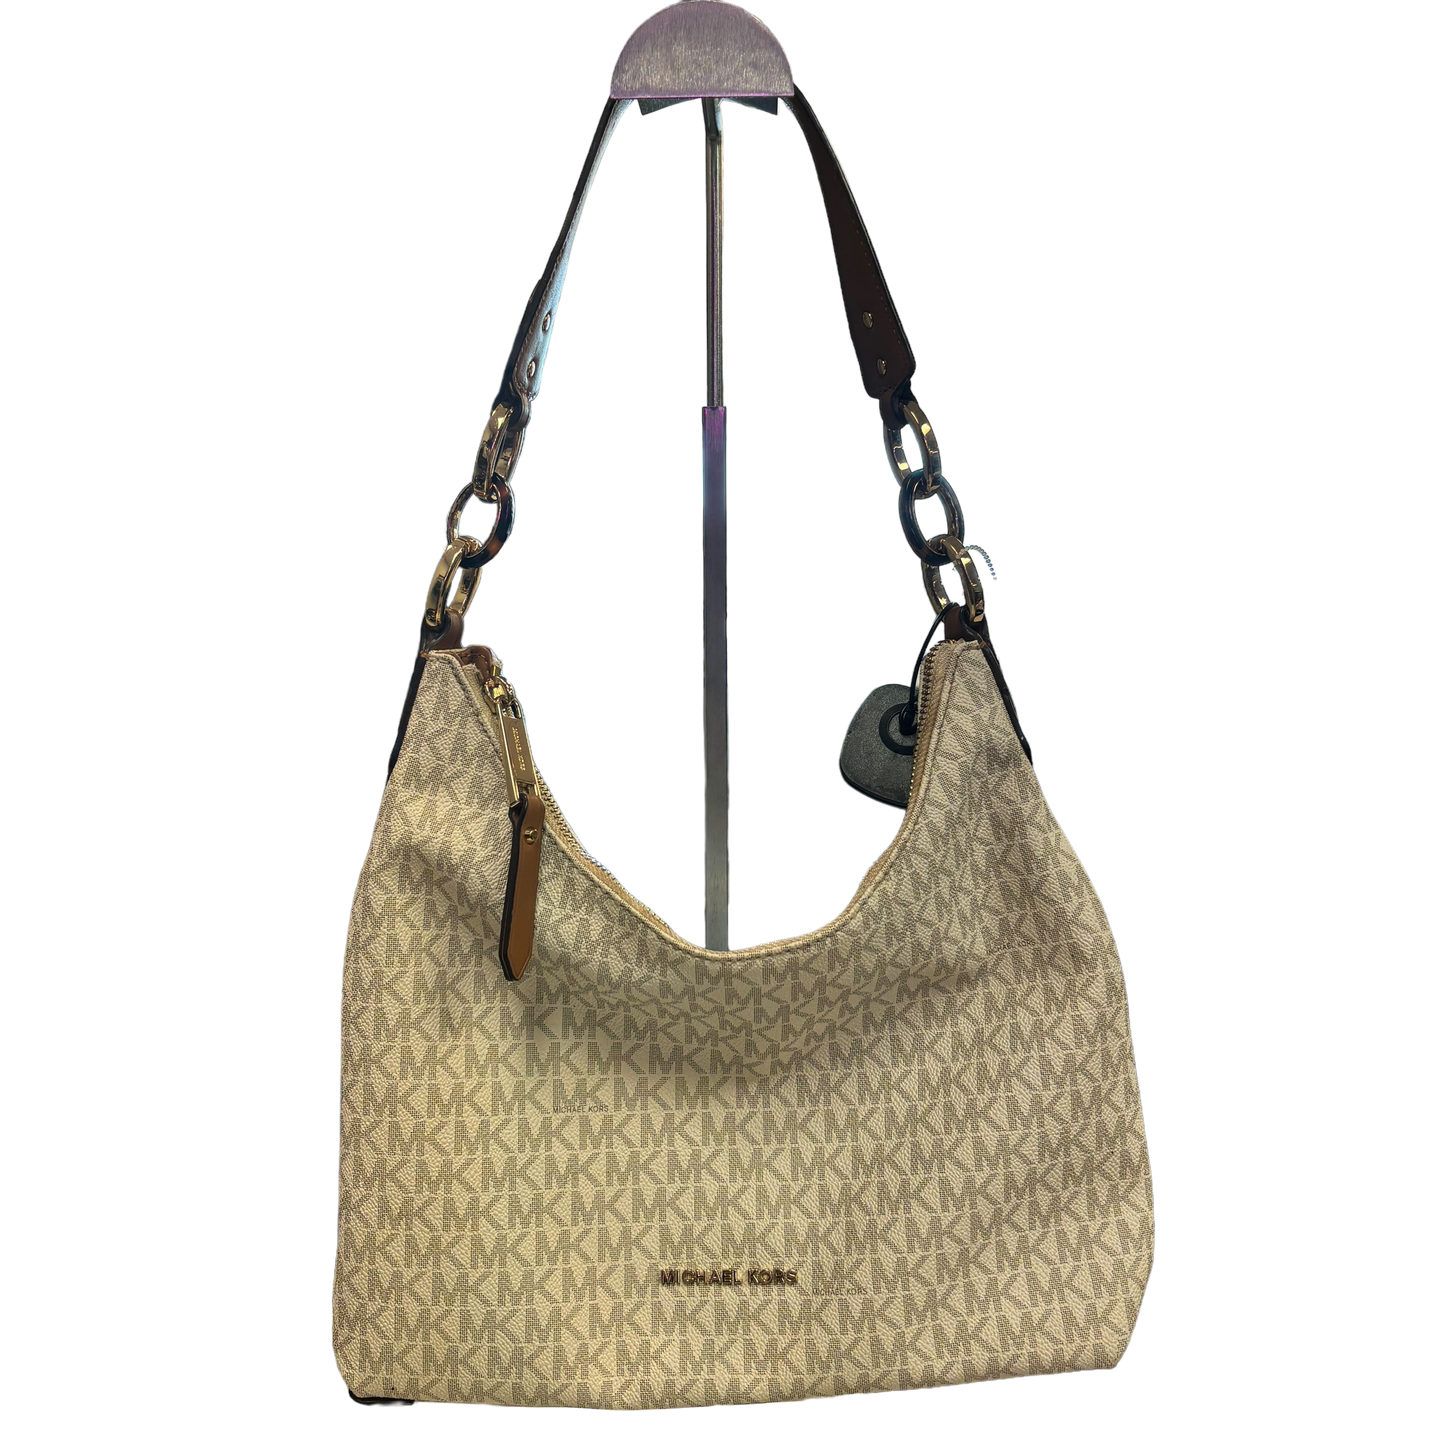 White Handbag Designer Michael Kors, Size Small